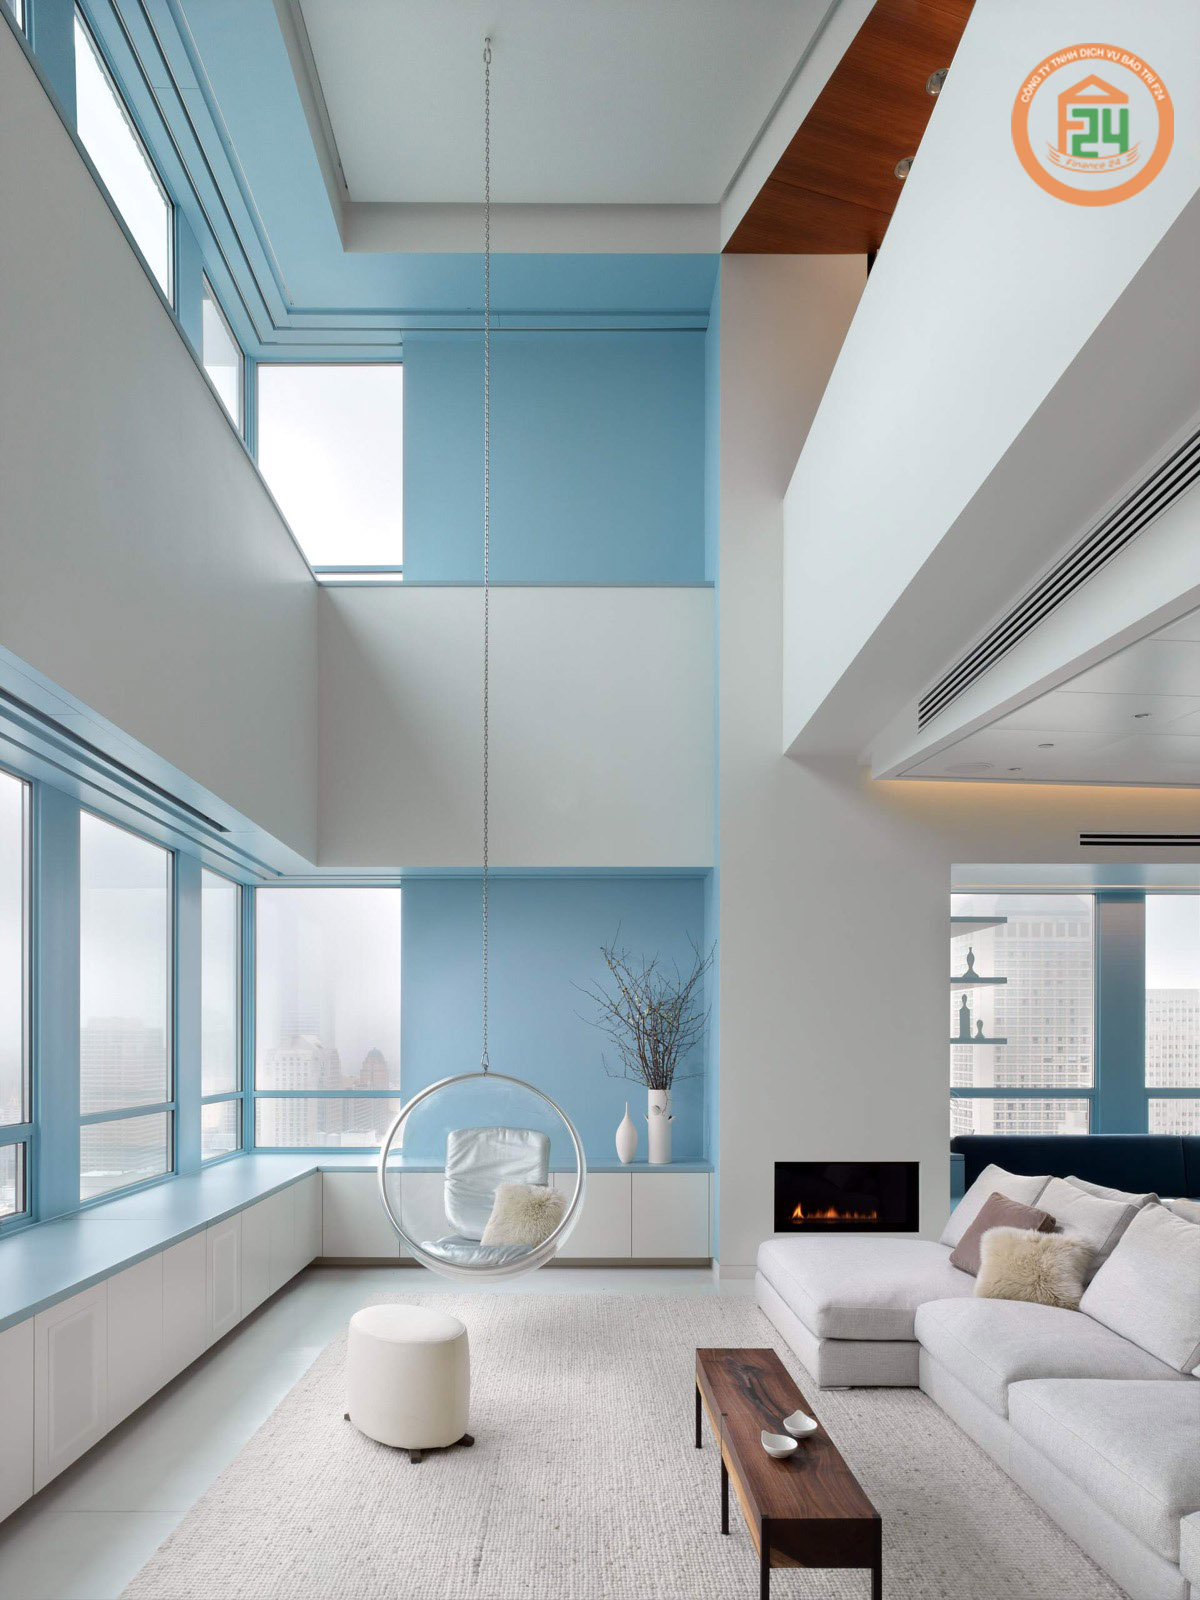 247 - Tone màu nào phù hợp với thiết kế nội thất phòng khách chung cư?